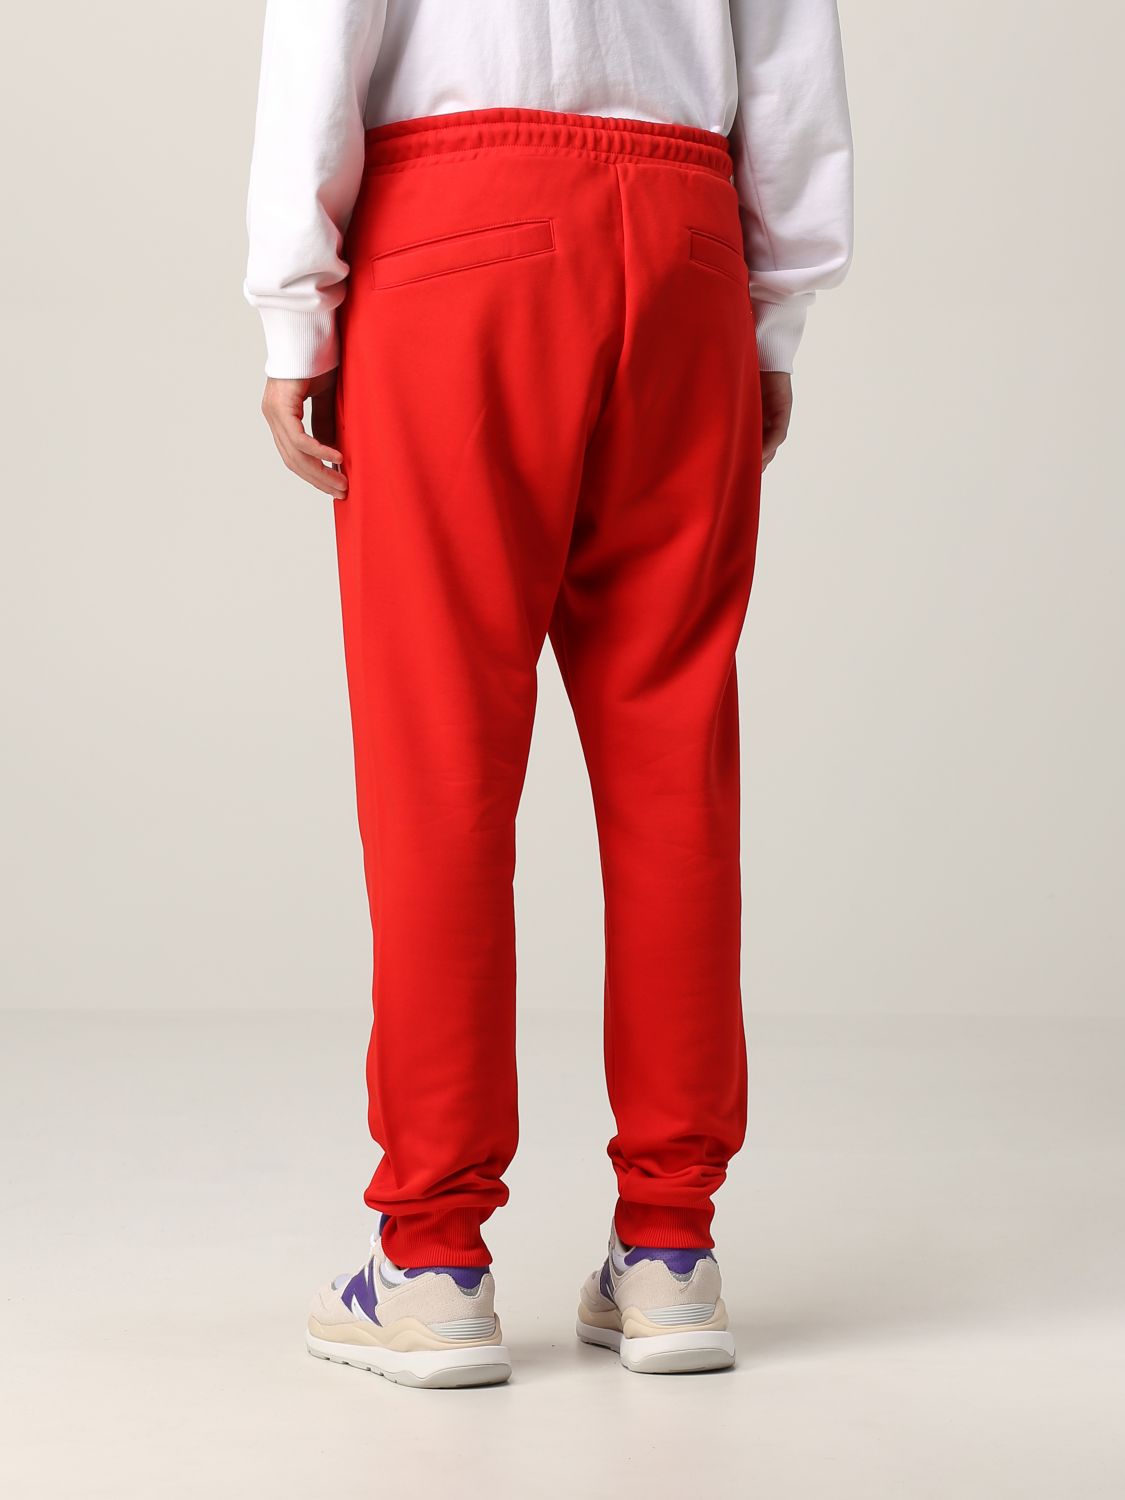 Slumkvarter Penelope Bugt DIESEL: jogging pants with logo - Red | Diesel pants A02825 OBAWT online on  GIGLIO.COM